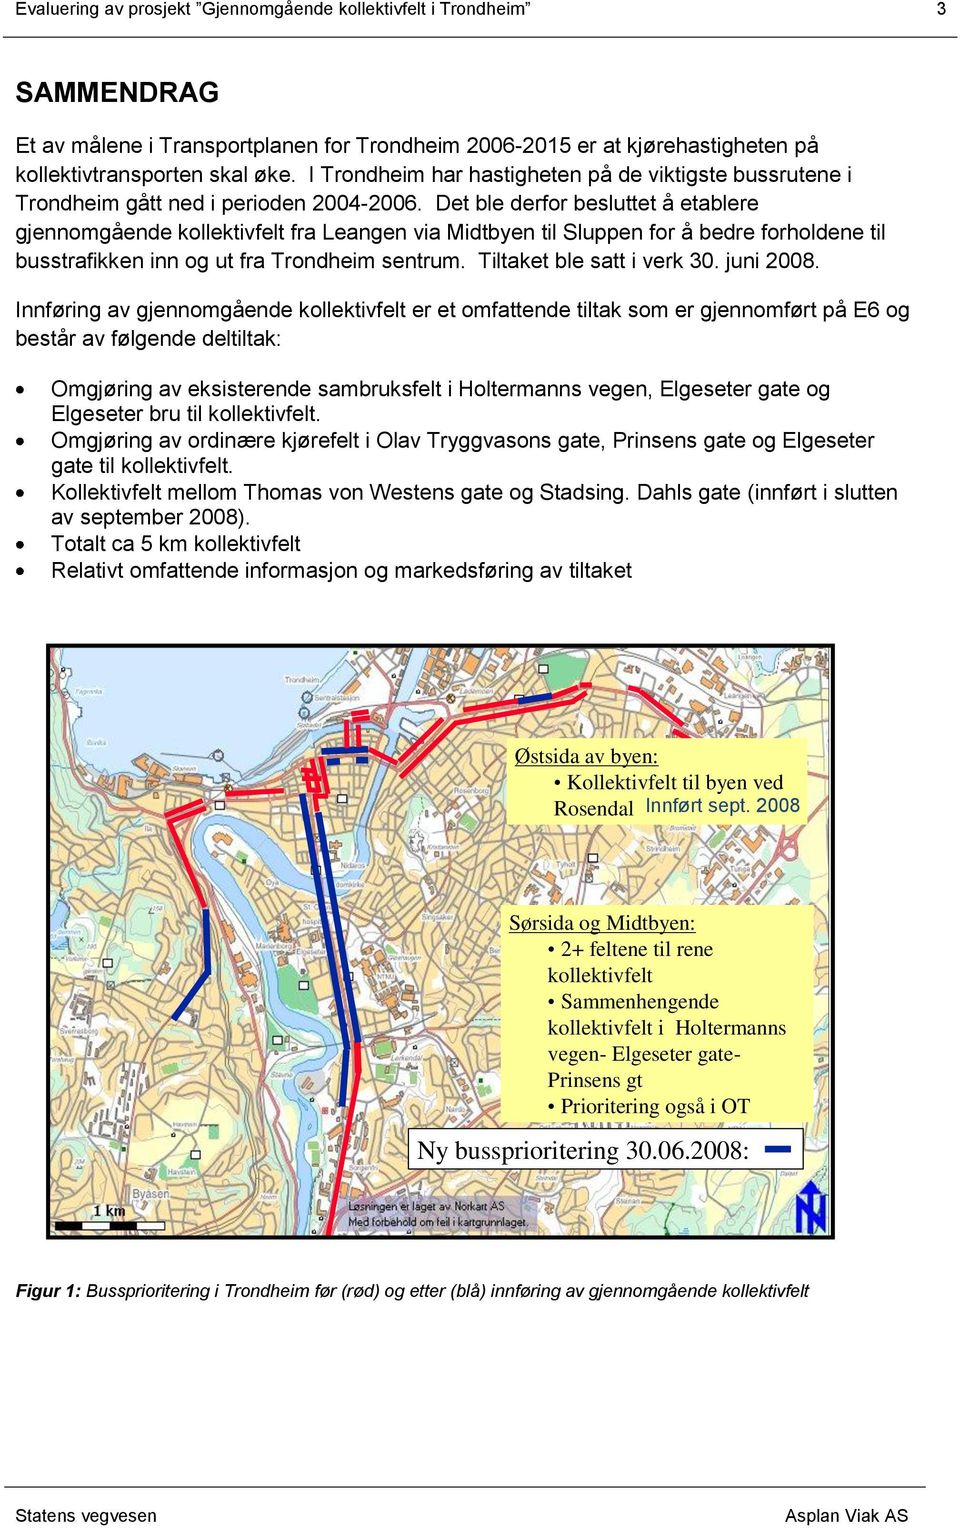 Det ble derfor besluttet å etablere gjennomgående kollektivfelt fra Leangen via Midtbyen til Sluppen for å bedre forholdene til busstrafikken inn og ut fra Trondheim sentrum.